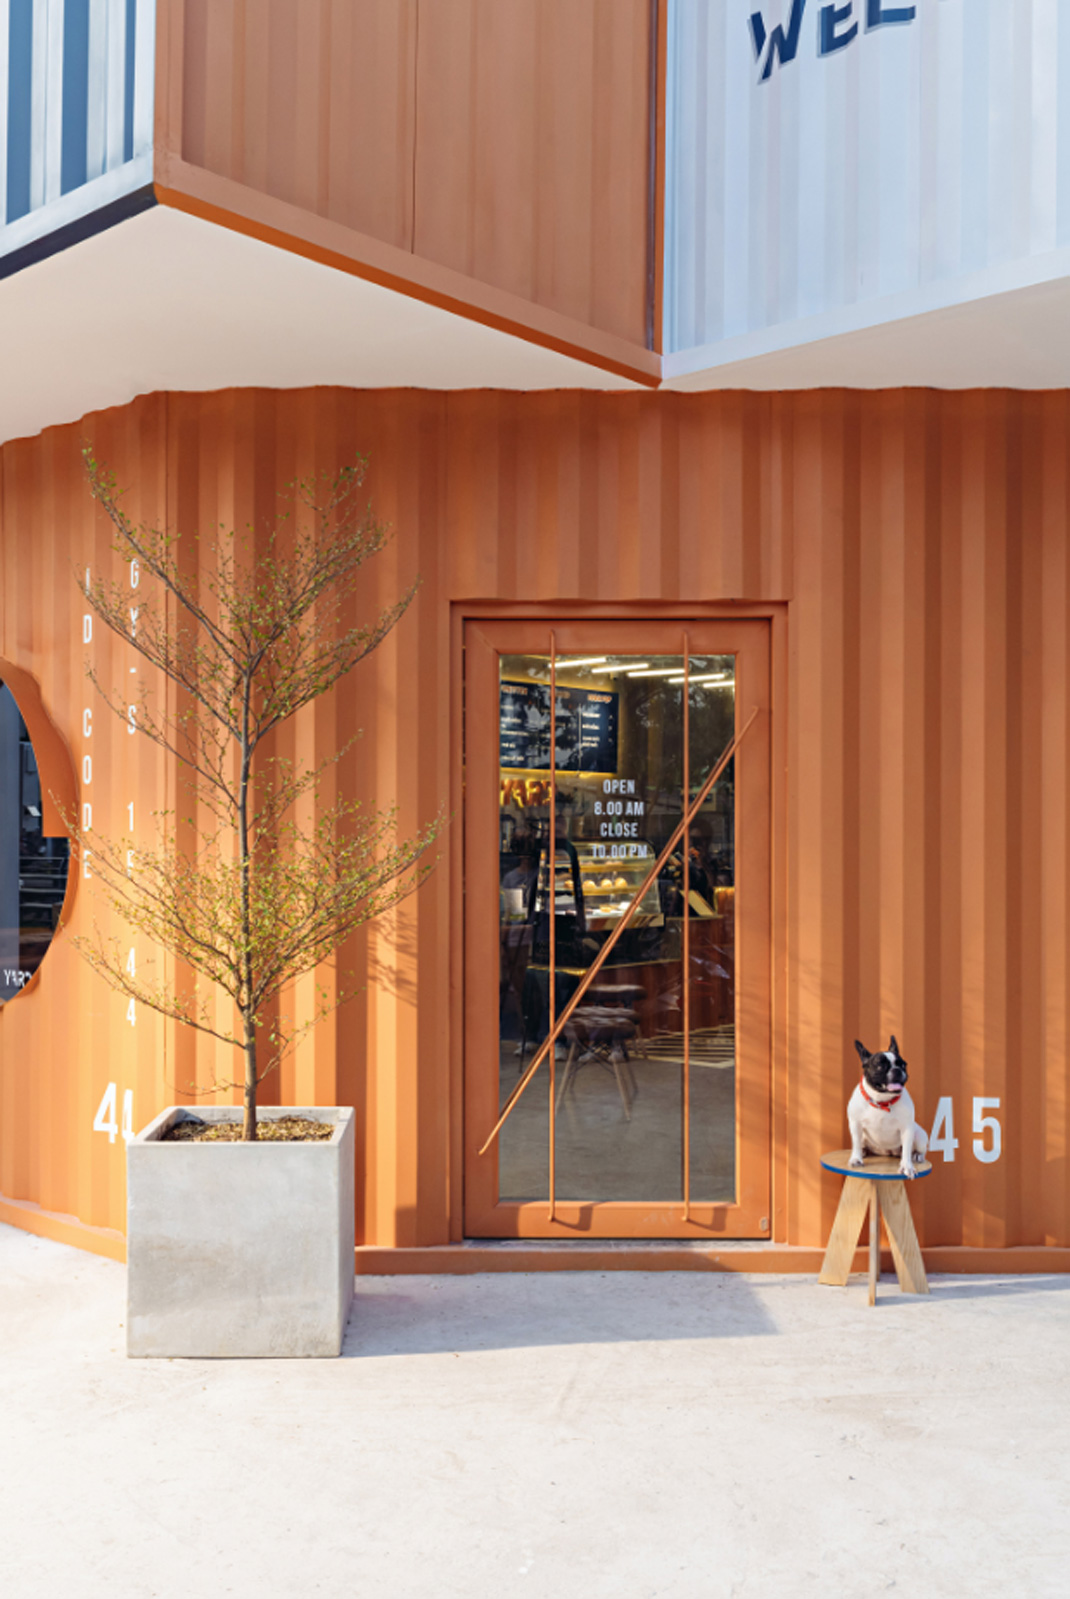 咖啡店Goon Yard 越南 咖啡店 集装箱 橙色 logo设计 vi设计 空间设计